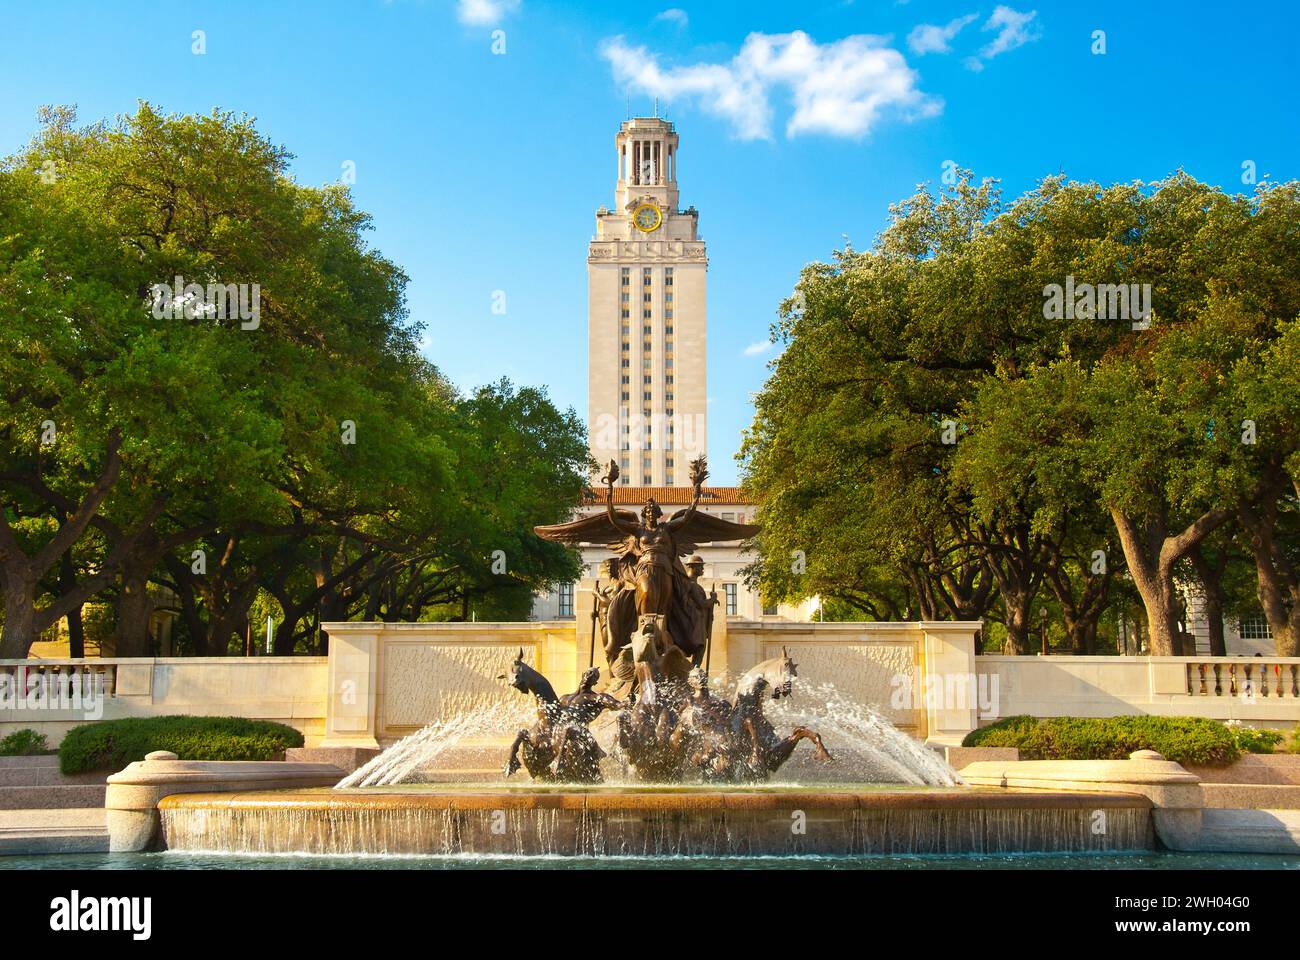 Università del Texas ad Austin - Littlefield Fountain (scultura) di Pompeo Coppini nel 1933 e UT Tower alta 307 piedi - Austin, Texas Foto Stock